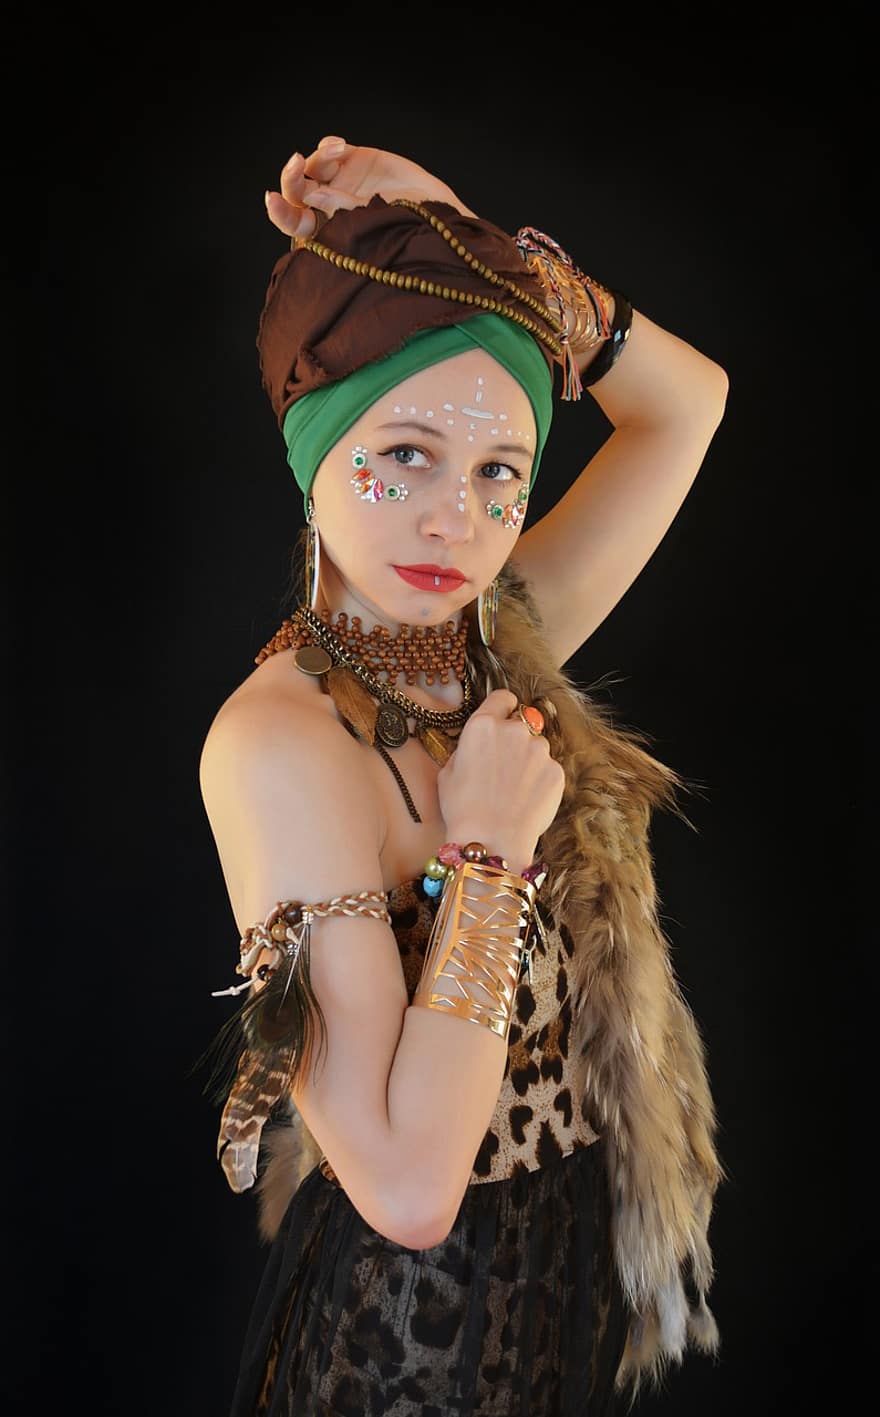 femme, costume national, femme africaine, costume, maquillage, motif léopard, bijouterie, des boucles d'oreilles, bijoux, turban, style africain